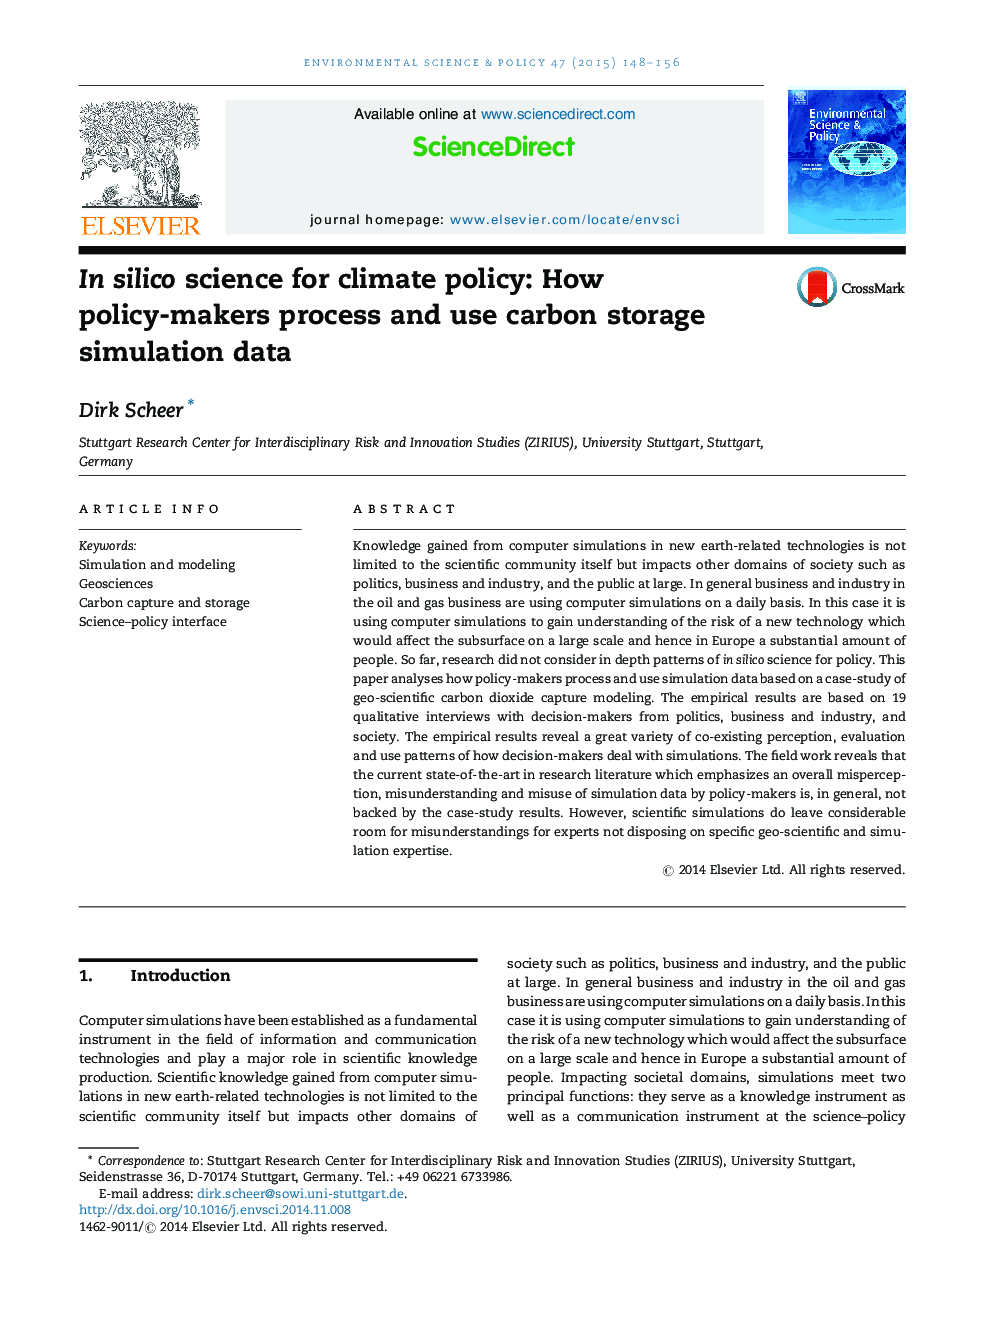 در علم سیلیکا برای سیاست آب و هوا: چطور سیاست گذاران اطلاعات شبیه سازی ذخیره سازی کربن را پردازش و استفاده می کنند 